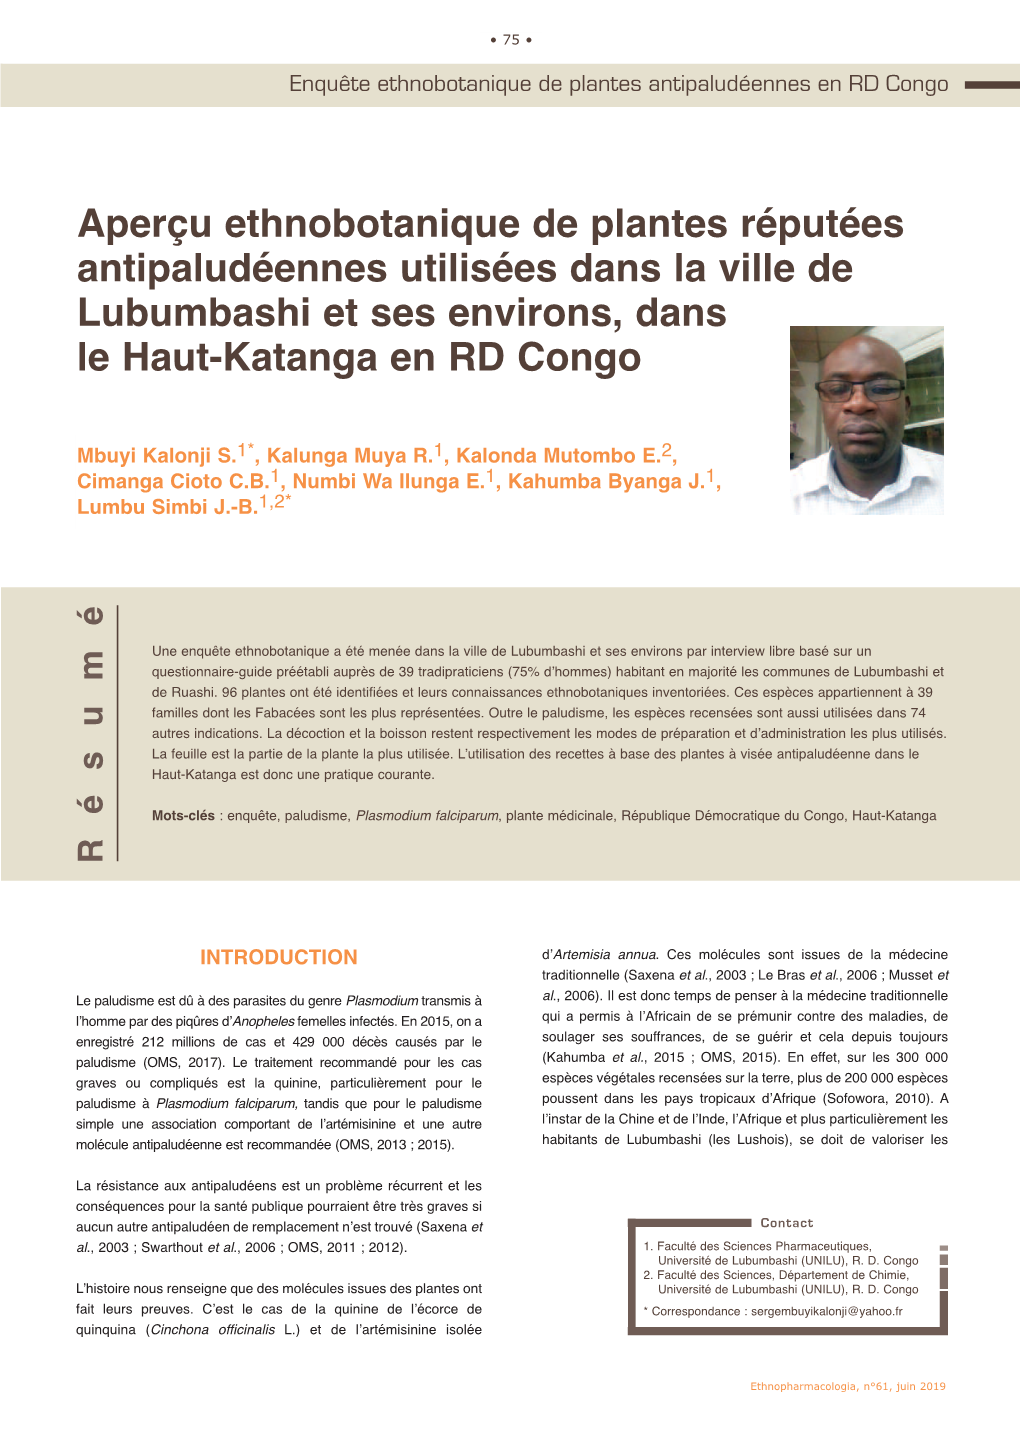 Aperçu Ethnobotanique De Plantes Réputées Antipaludéennes Utilisées Dans La Ville De Lubumbashi Et Ses Environs, Dans Le Haut-Katanga En RD Congo